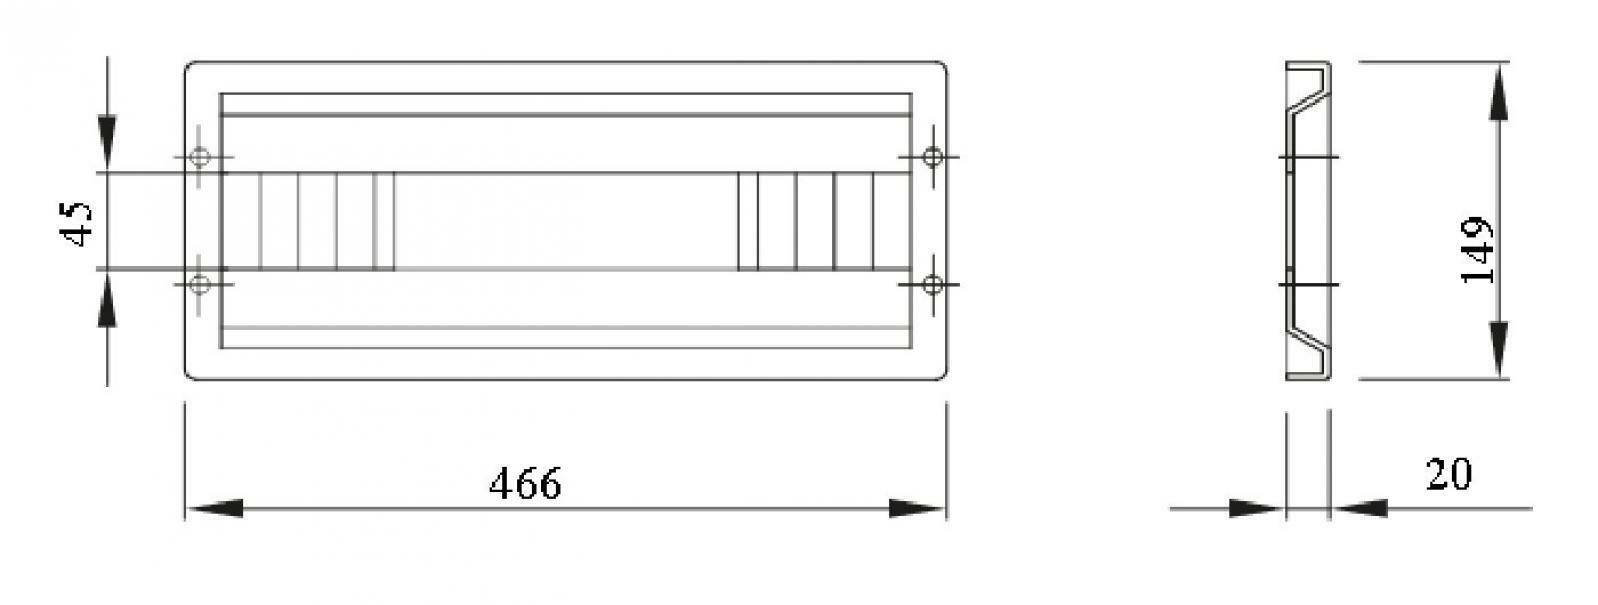 gewiss gewiss modulo pannello asolato completo di guida din h 1 515mm 24 moduli gw46422f